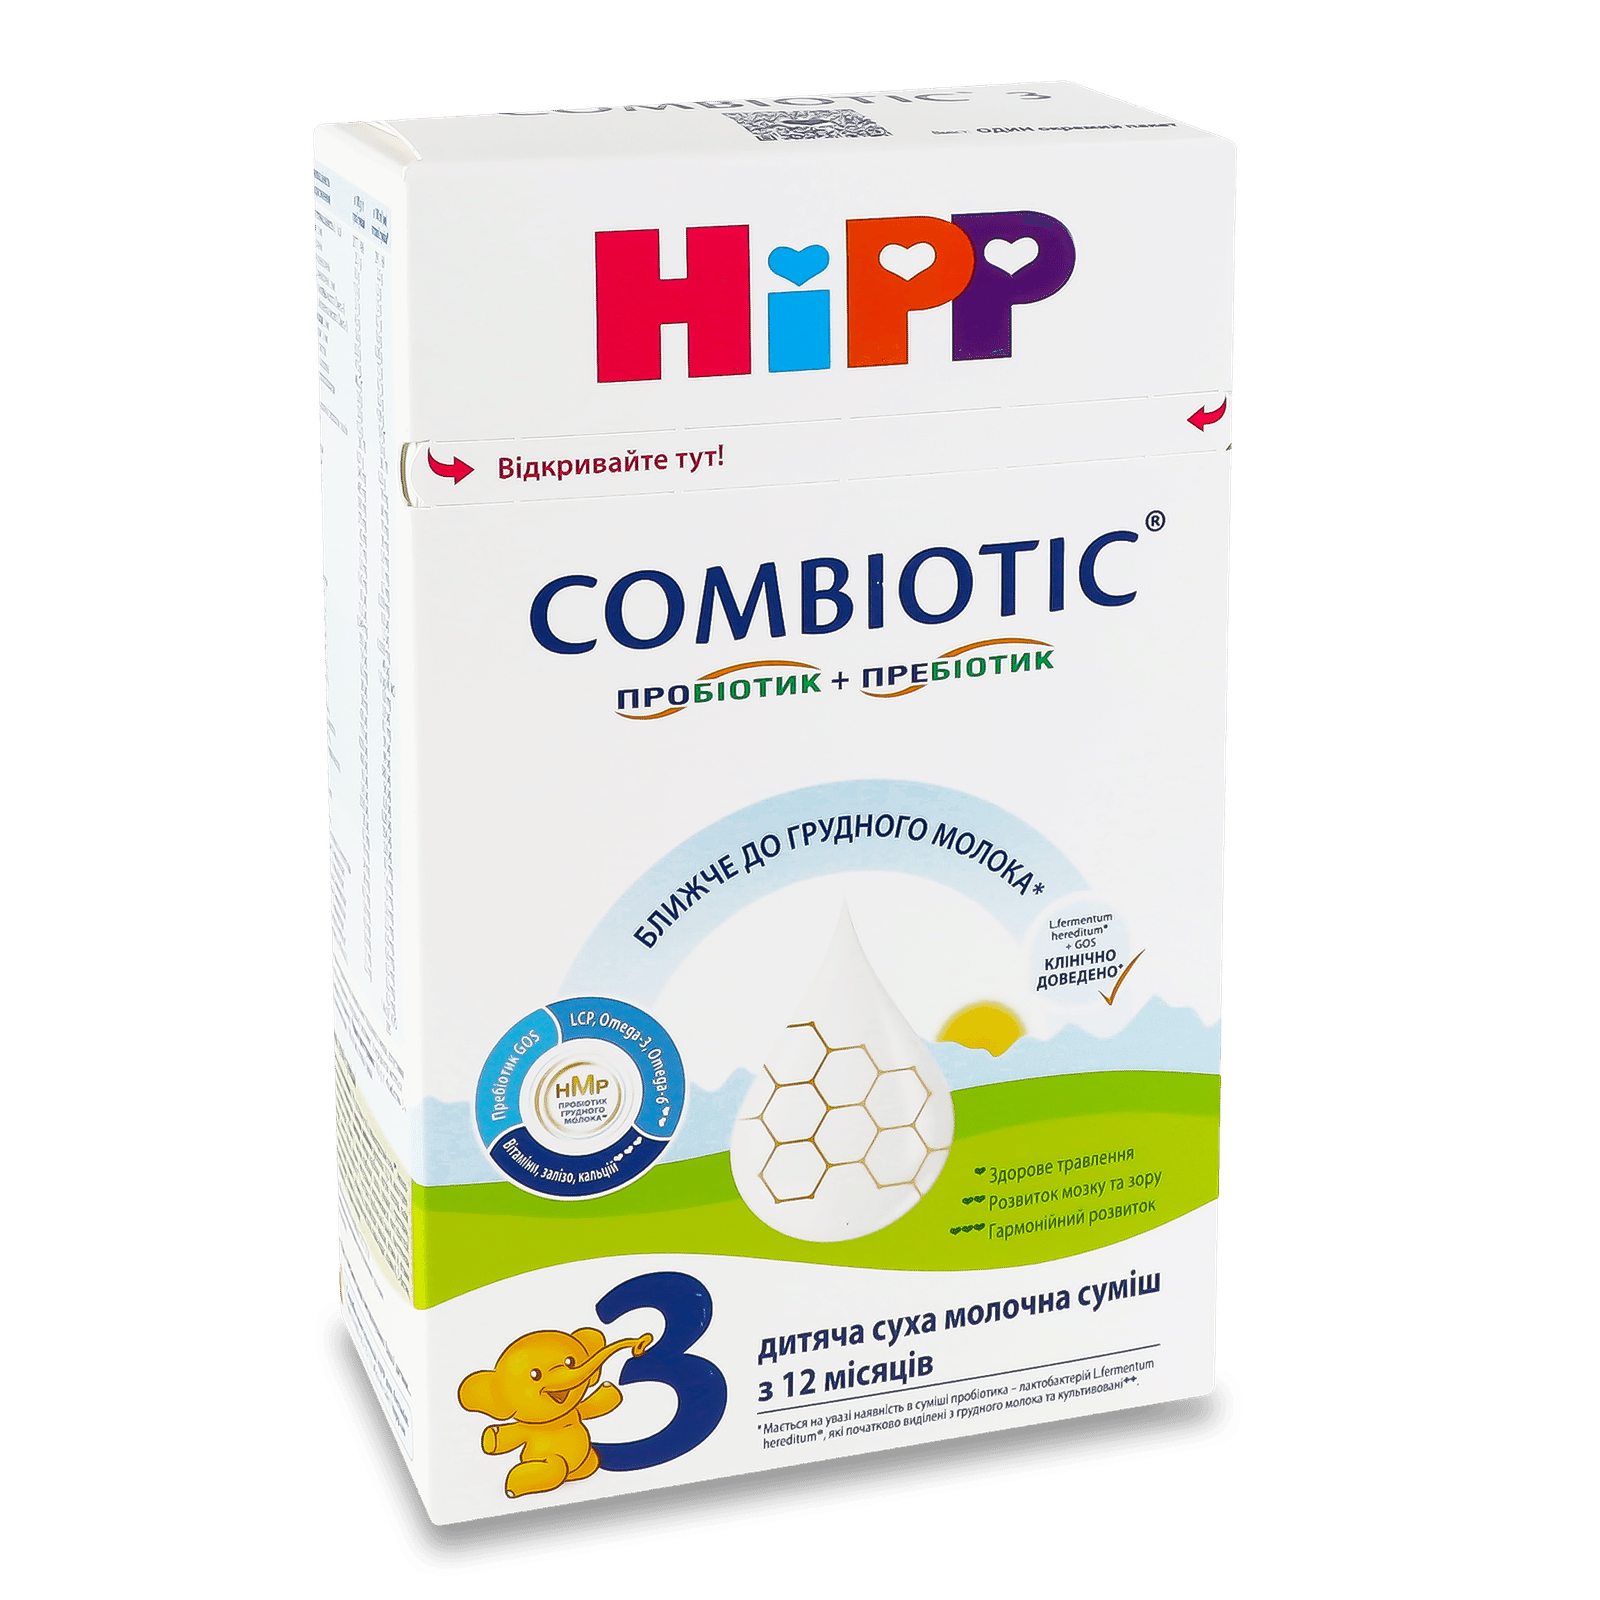 Суміш Hipp Combiotiс 3 суха молочна - 1